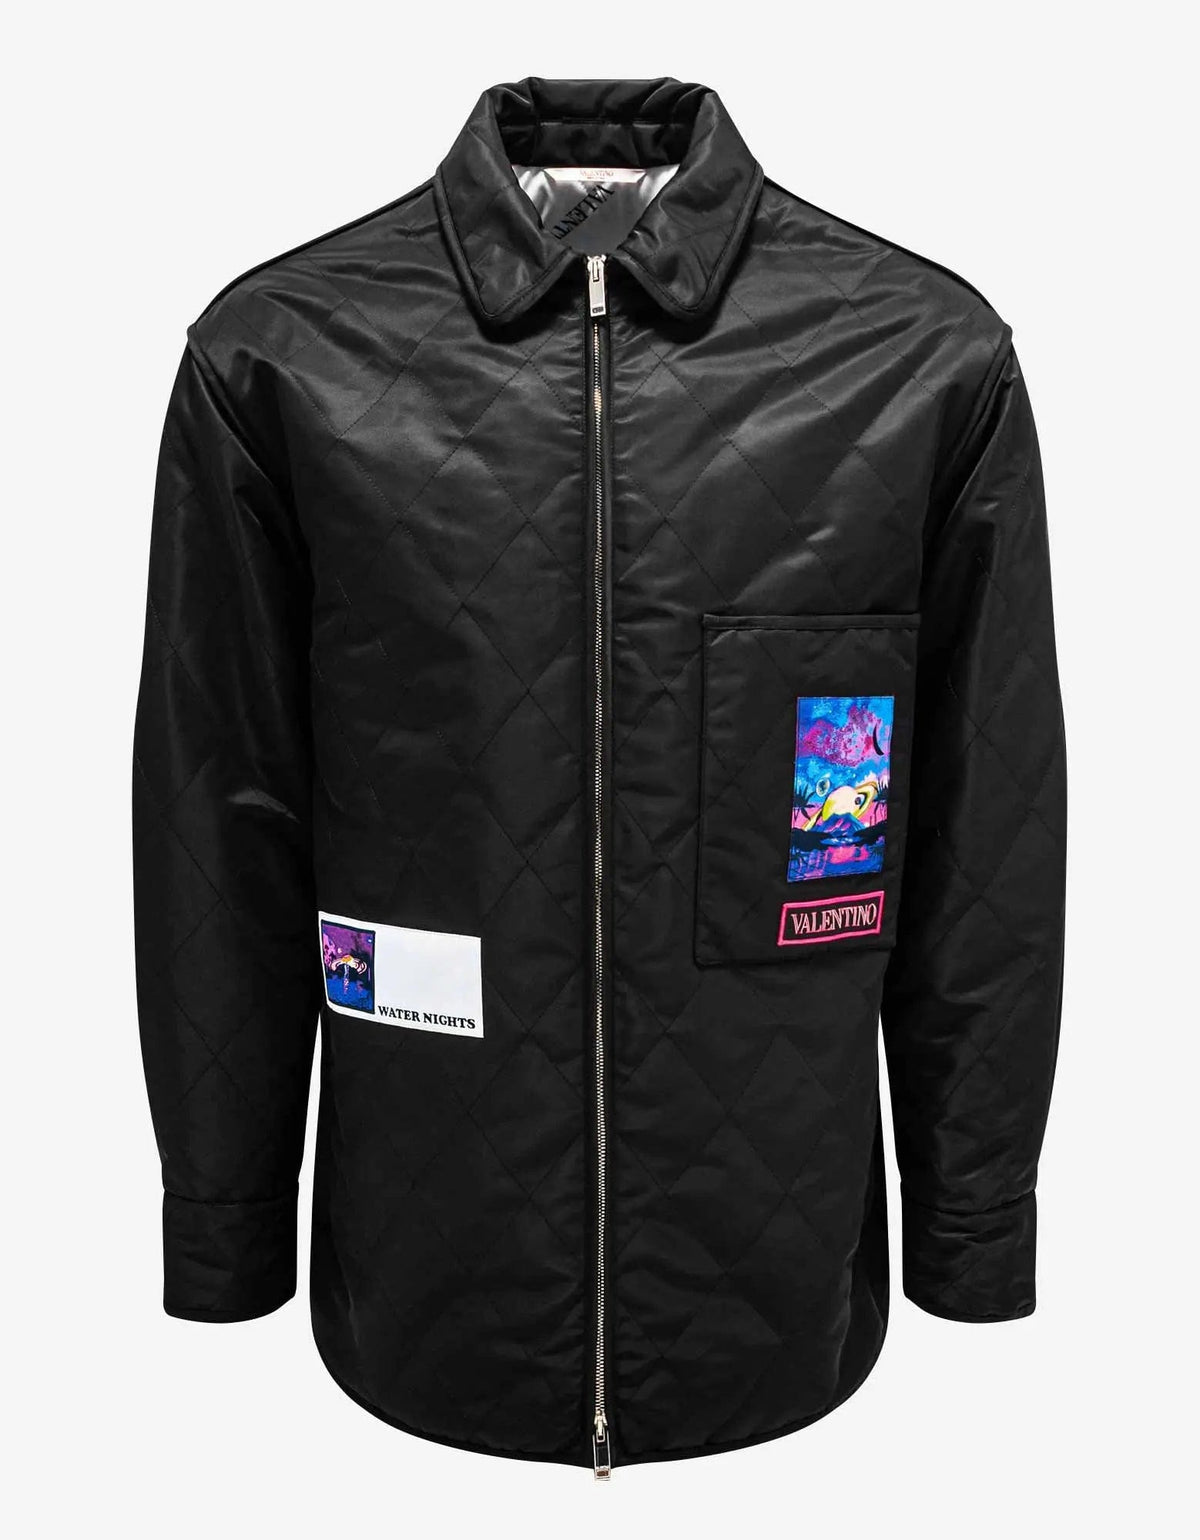 Valentino Garavani Valentino Garavani Black Quilted Jacket with Vaporwave Patches